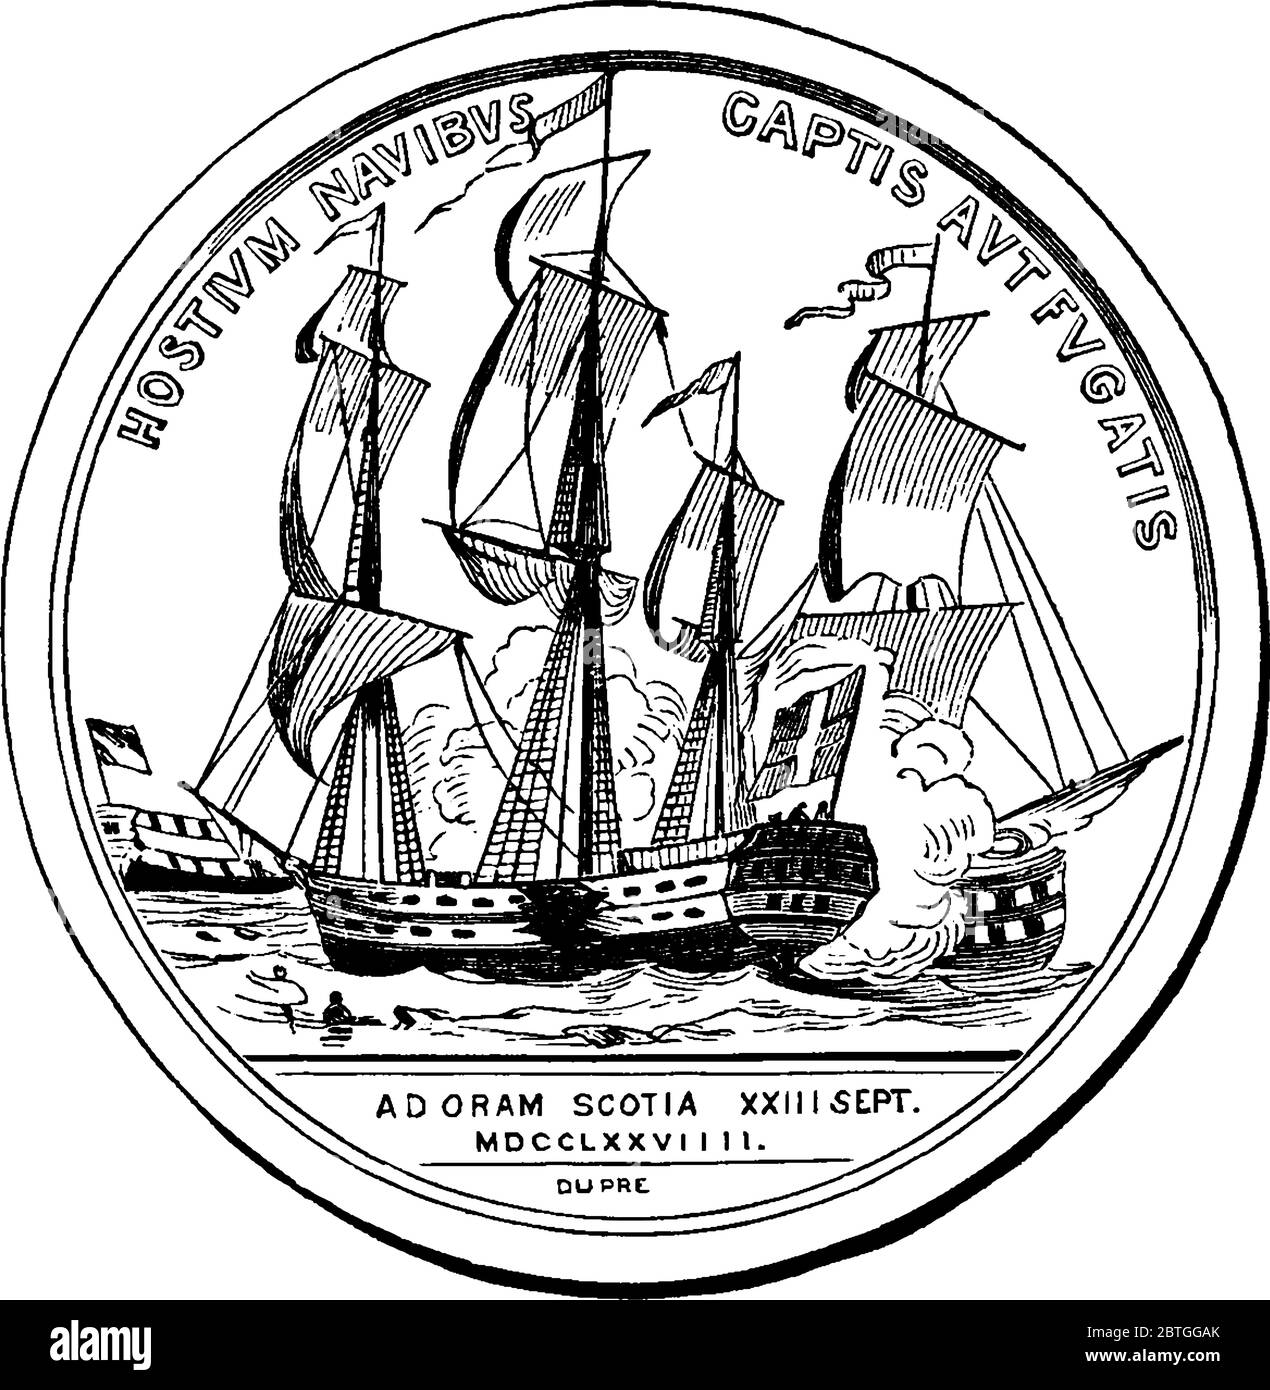 Médaille d'or du Congrès gravée avec des écrits et une image, décernée au premier combattant naval bien connu des États-Unis, John Paul Jones, dans le Revol américain Illustration de Vecteur